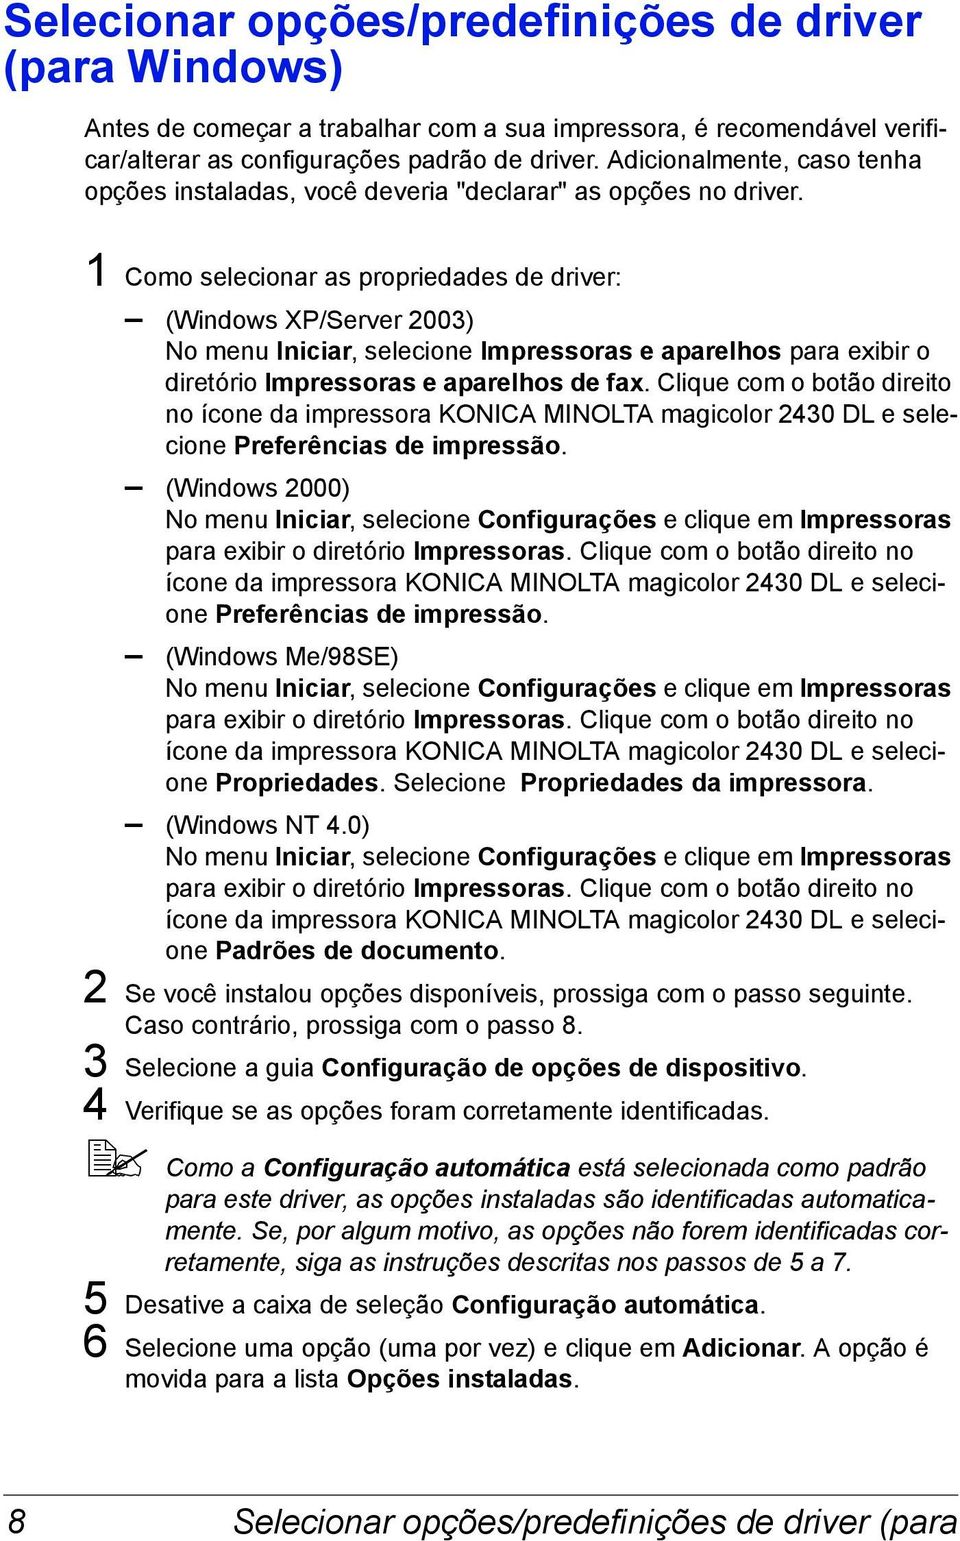 1 Como selecionar as propriedades de driver: (Windows XP/Server 2003) No menu Iniciar, selecione Impressoras e aparelhos para exibir o diretório Impressoras e aparelhos de fax.